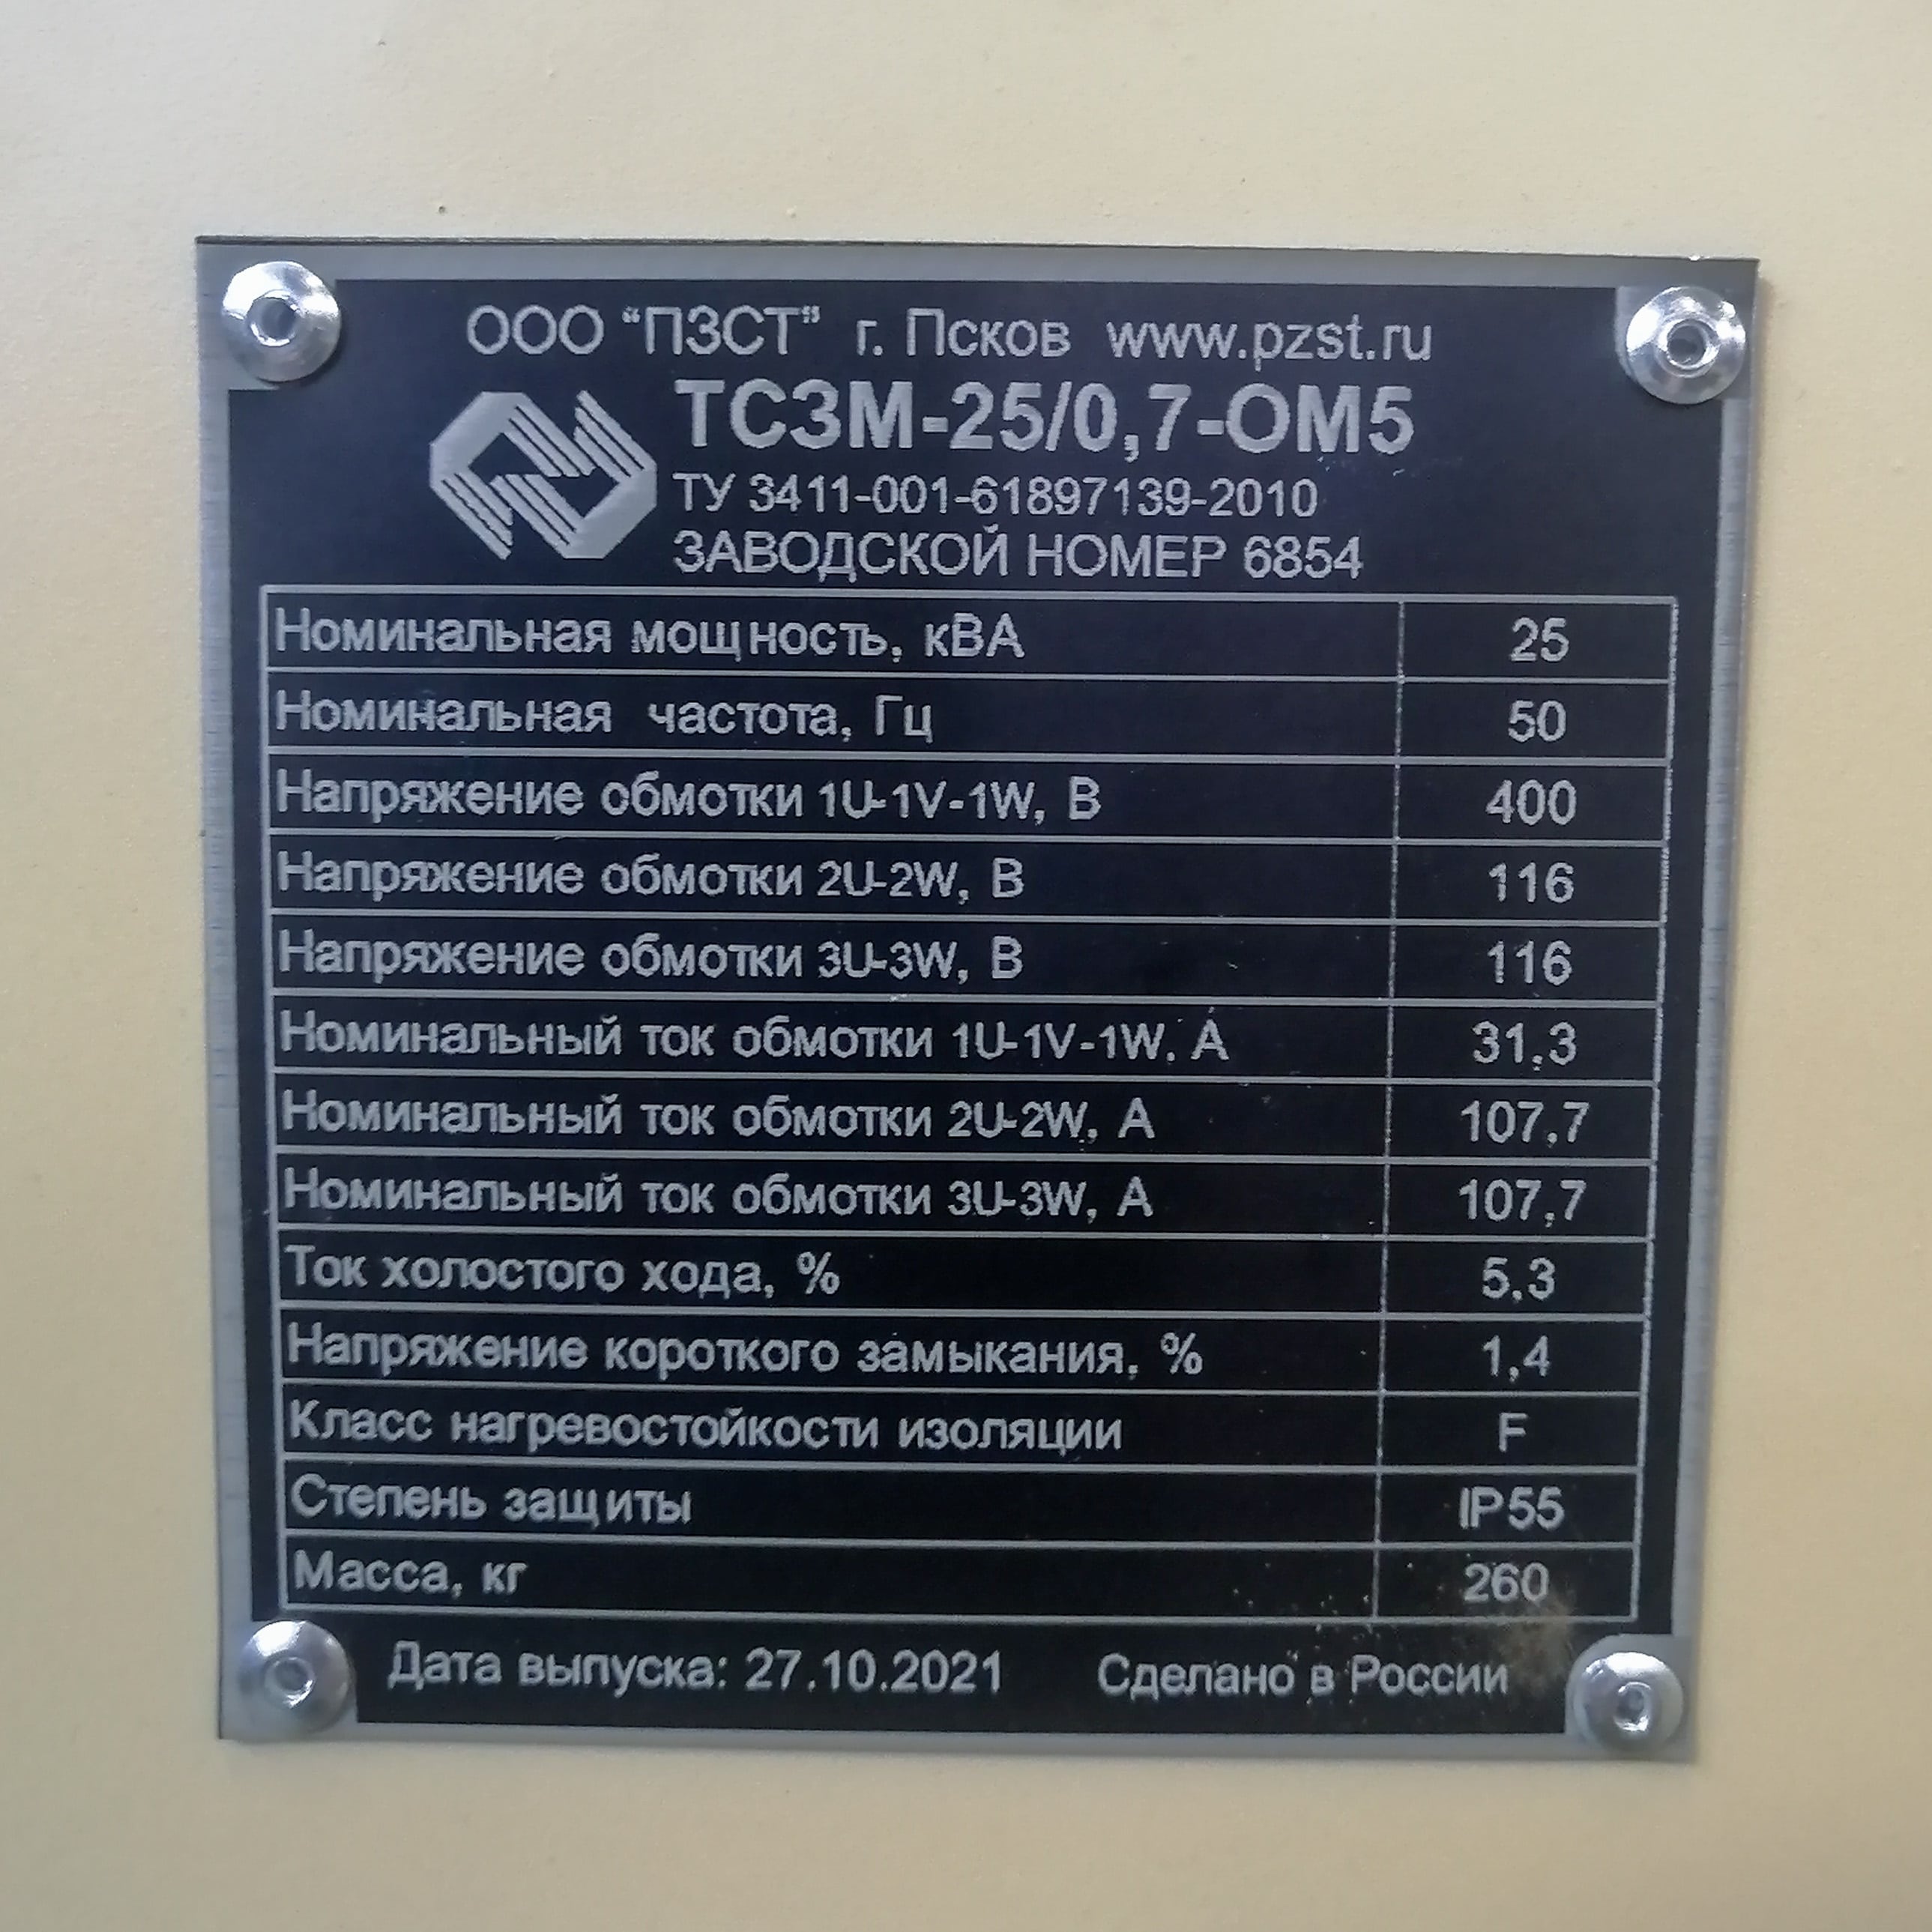 Изготовление специального трансформатора ТСЗМ-25/ОМ5 25кВА со степенью защиты IP55